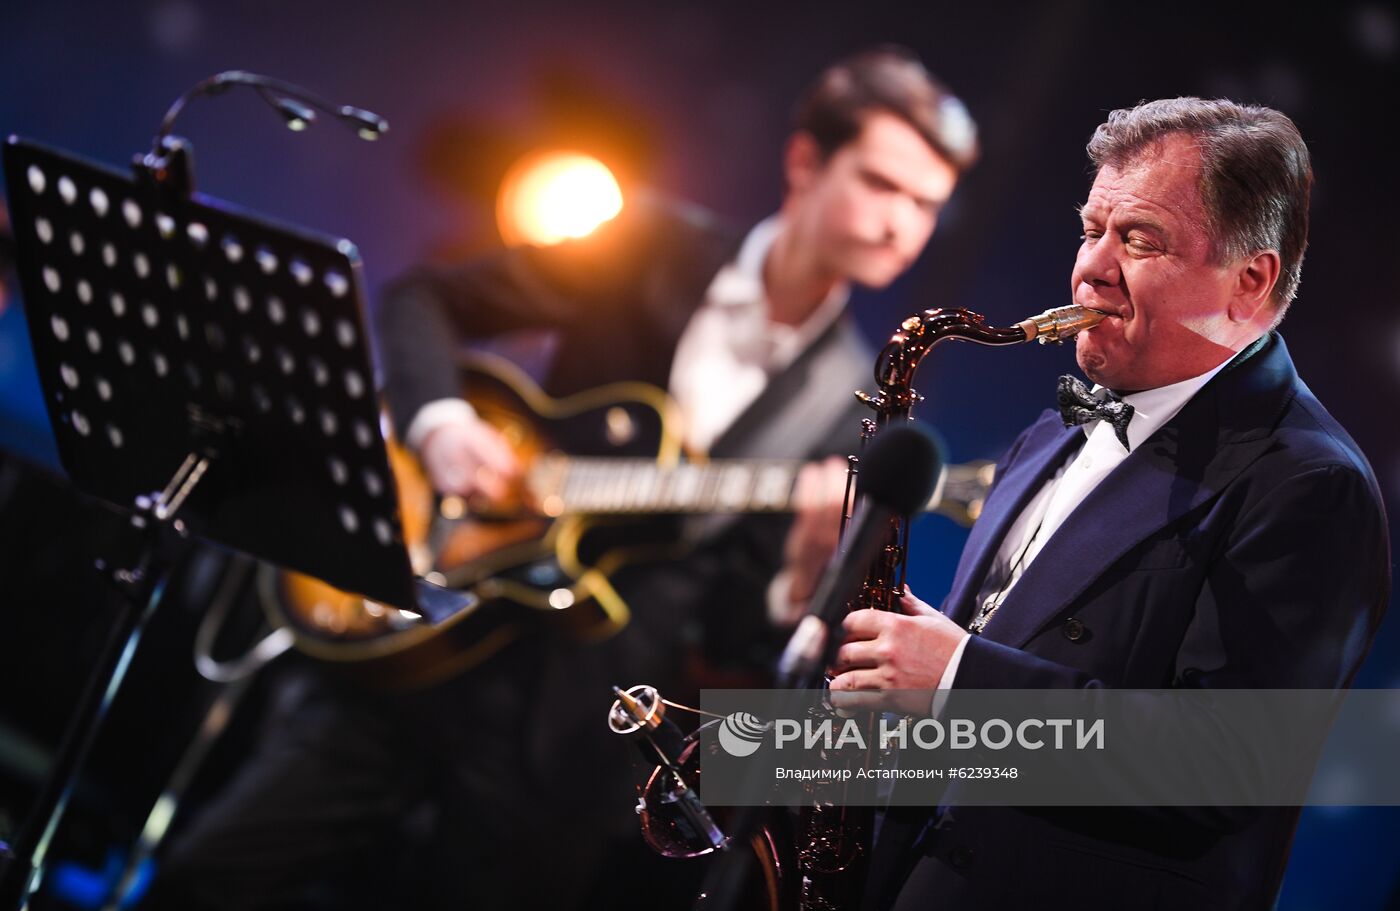 Праздничный концерт И. Абдразакова и джазового квинтета И. Бутмана "Посвящение"